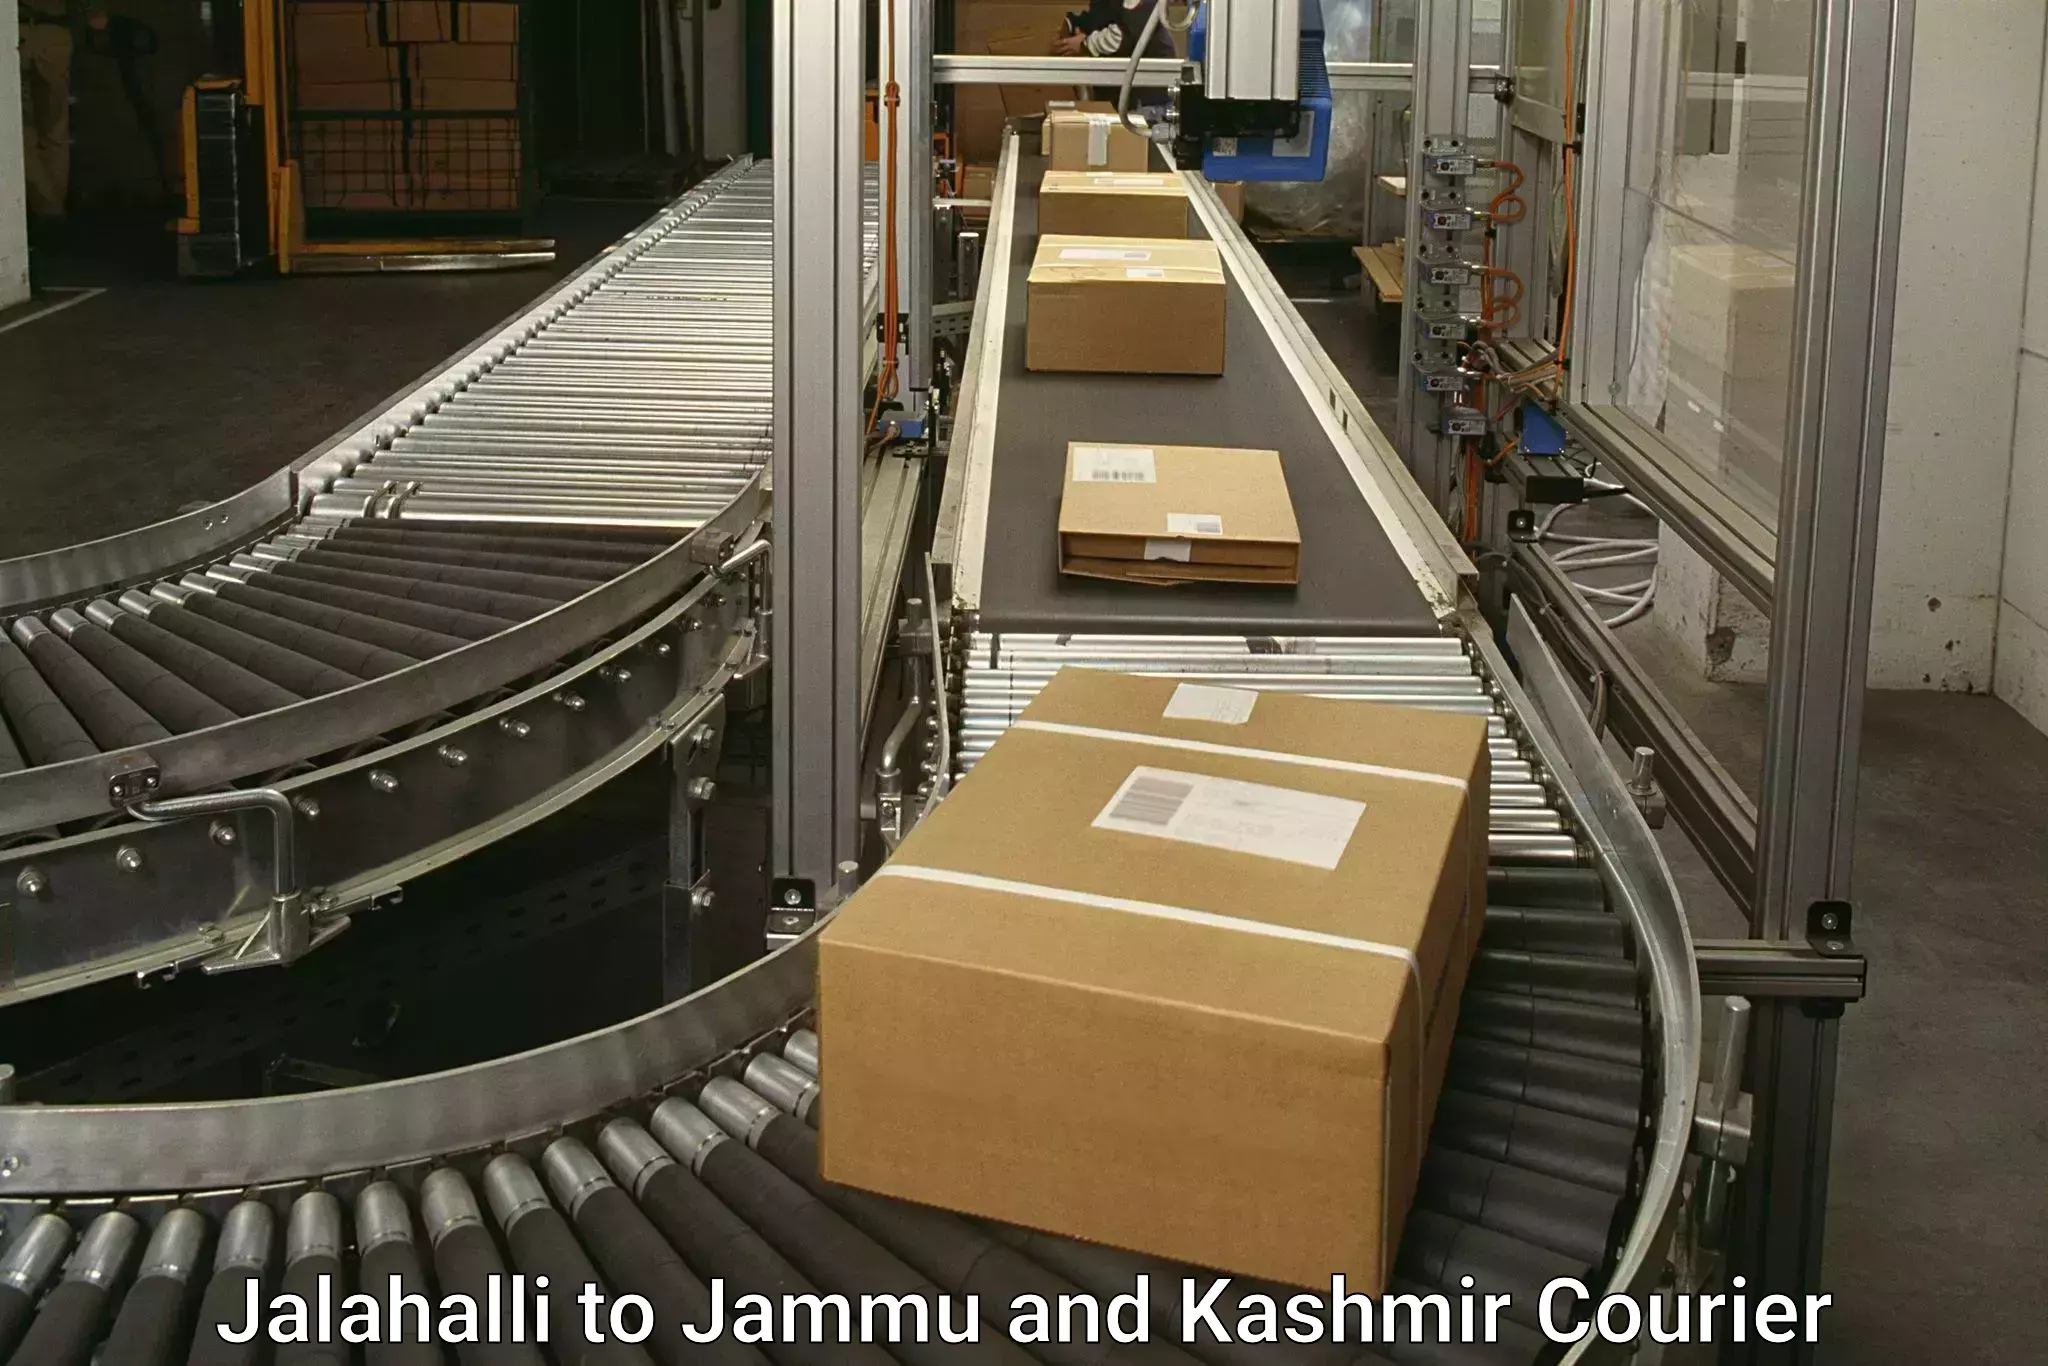 Tracking updates Jalahalli to Jammu and Kashmir